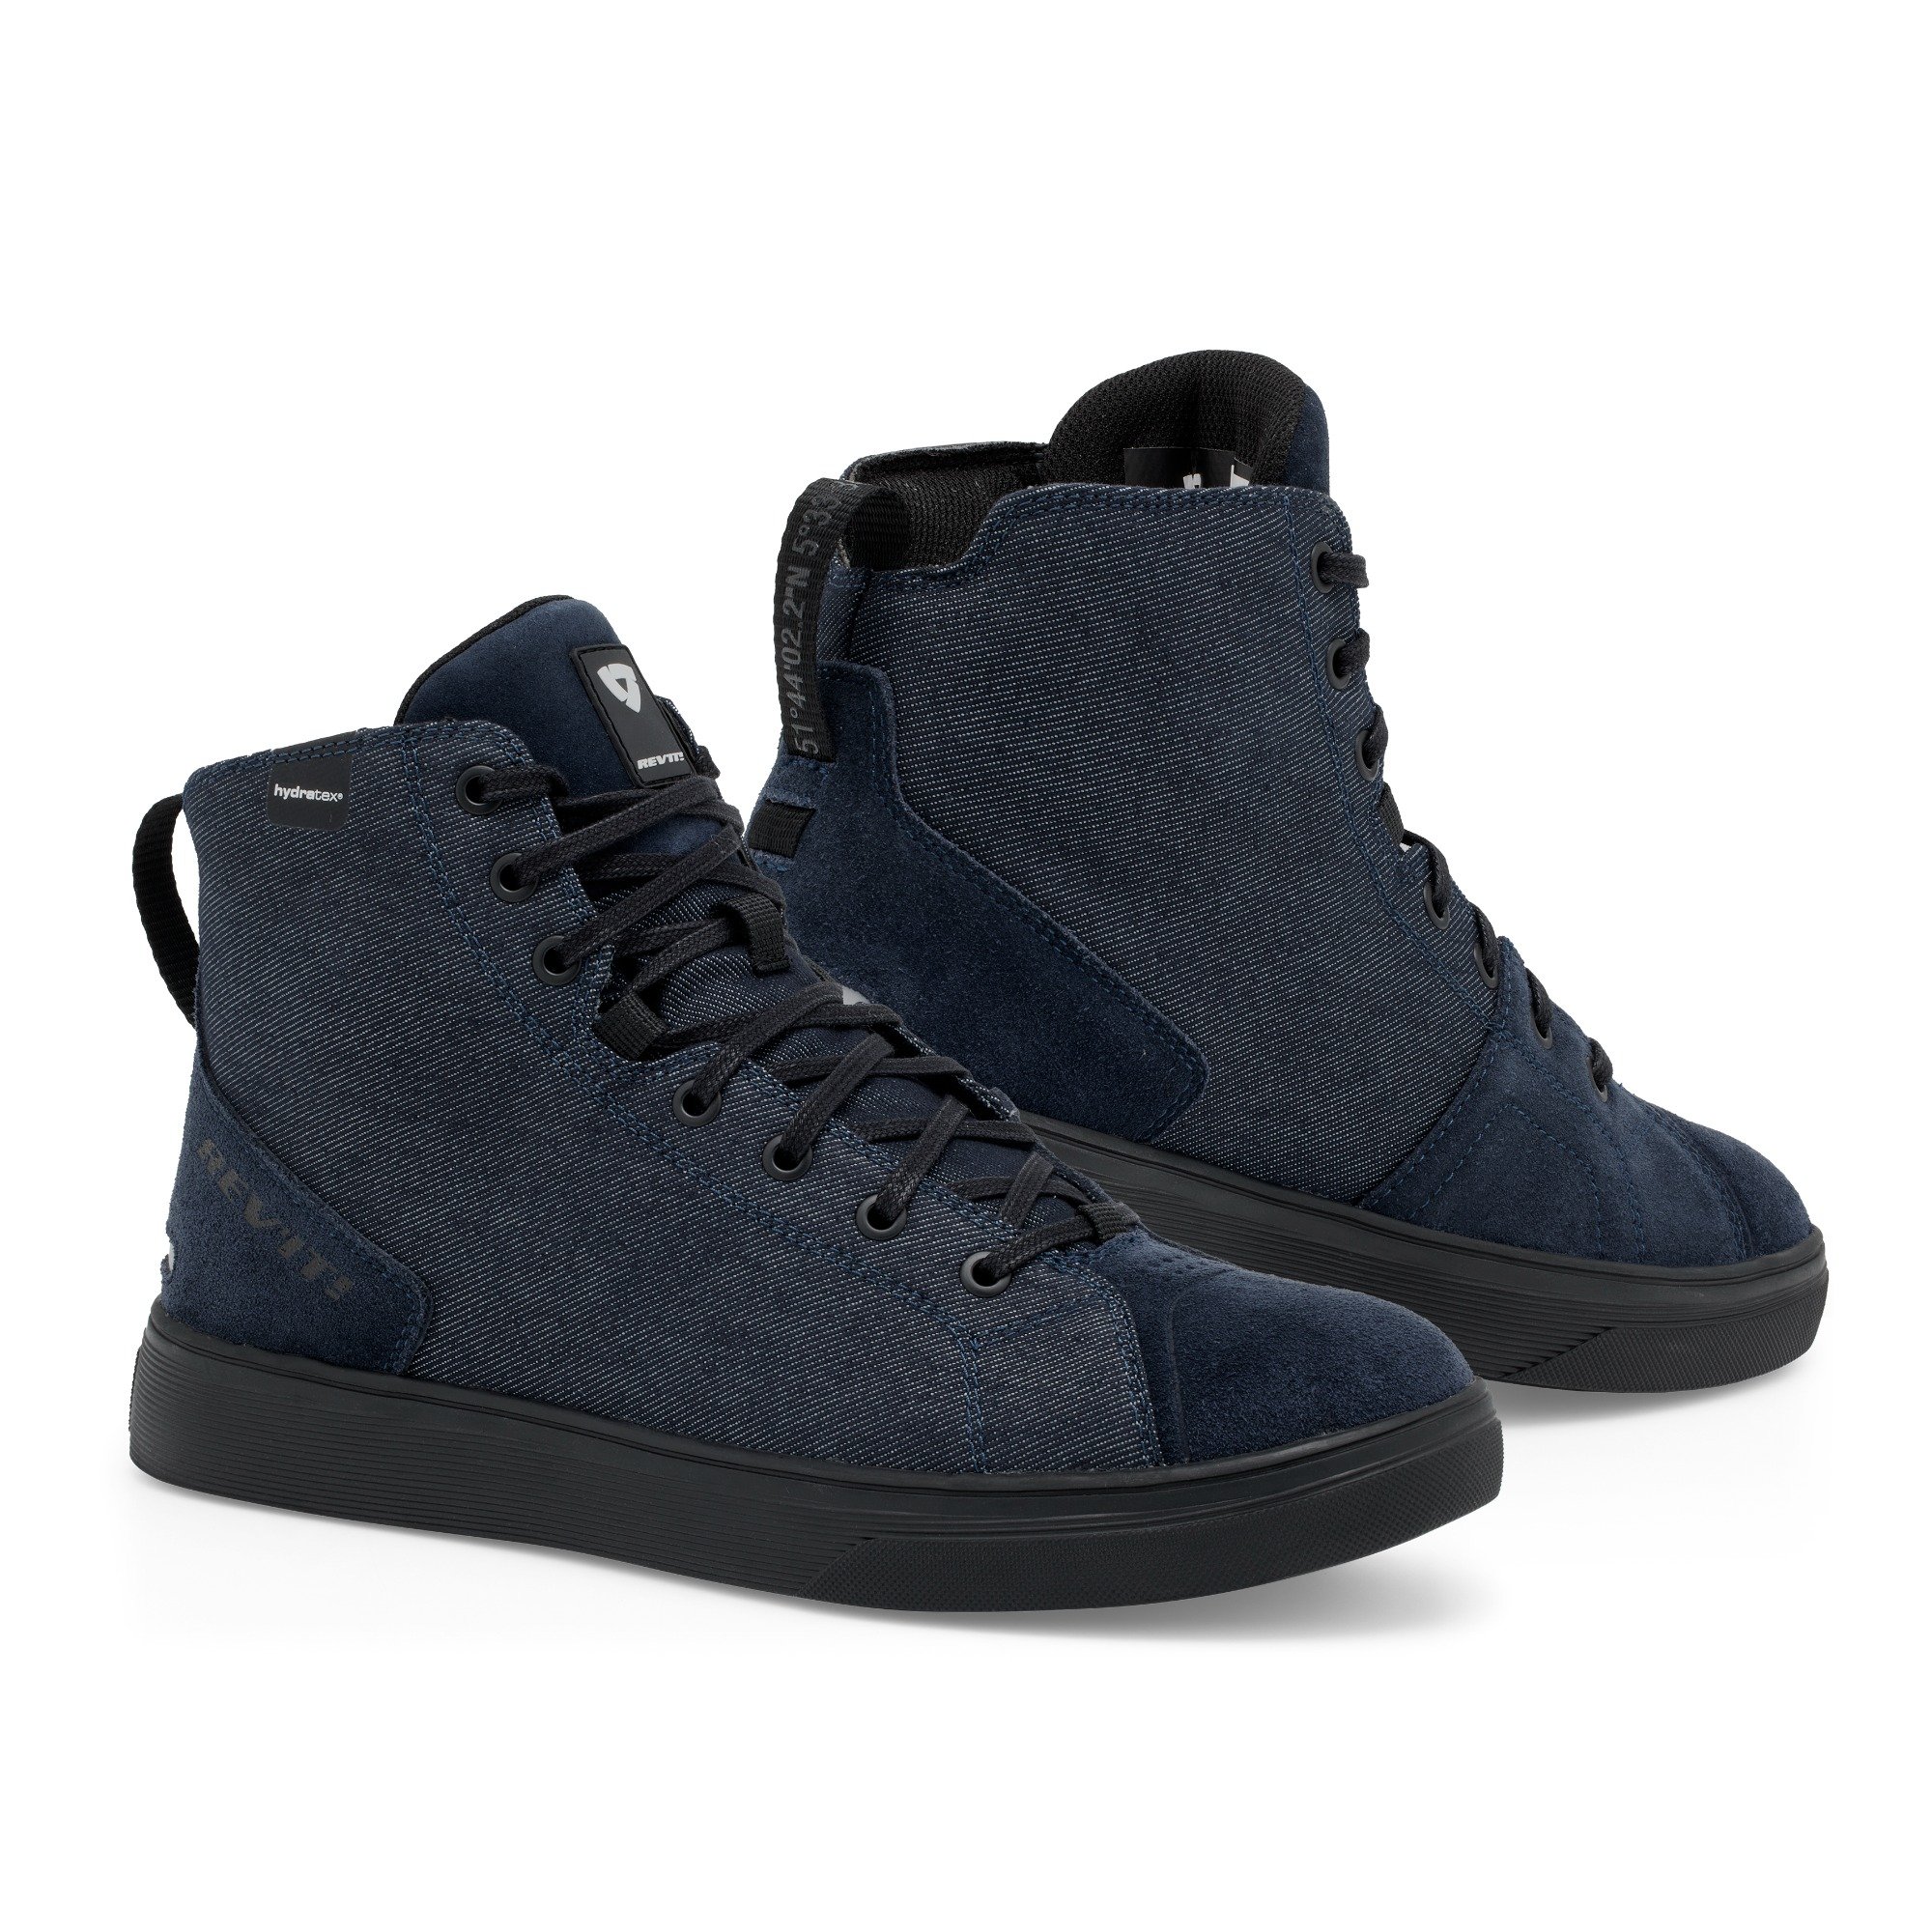 Image of REV'IT! Delta H2O Shoes Dark Blue Black Size 40 EN